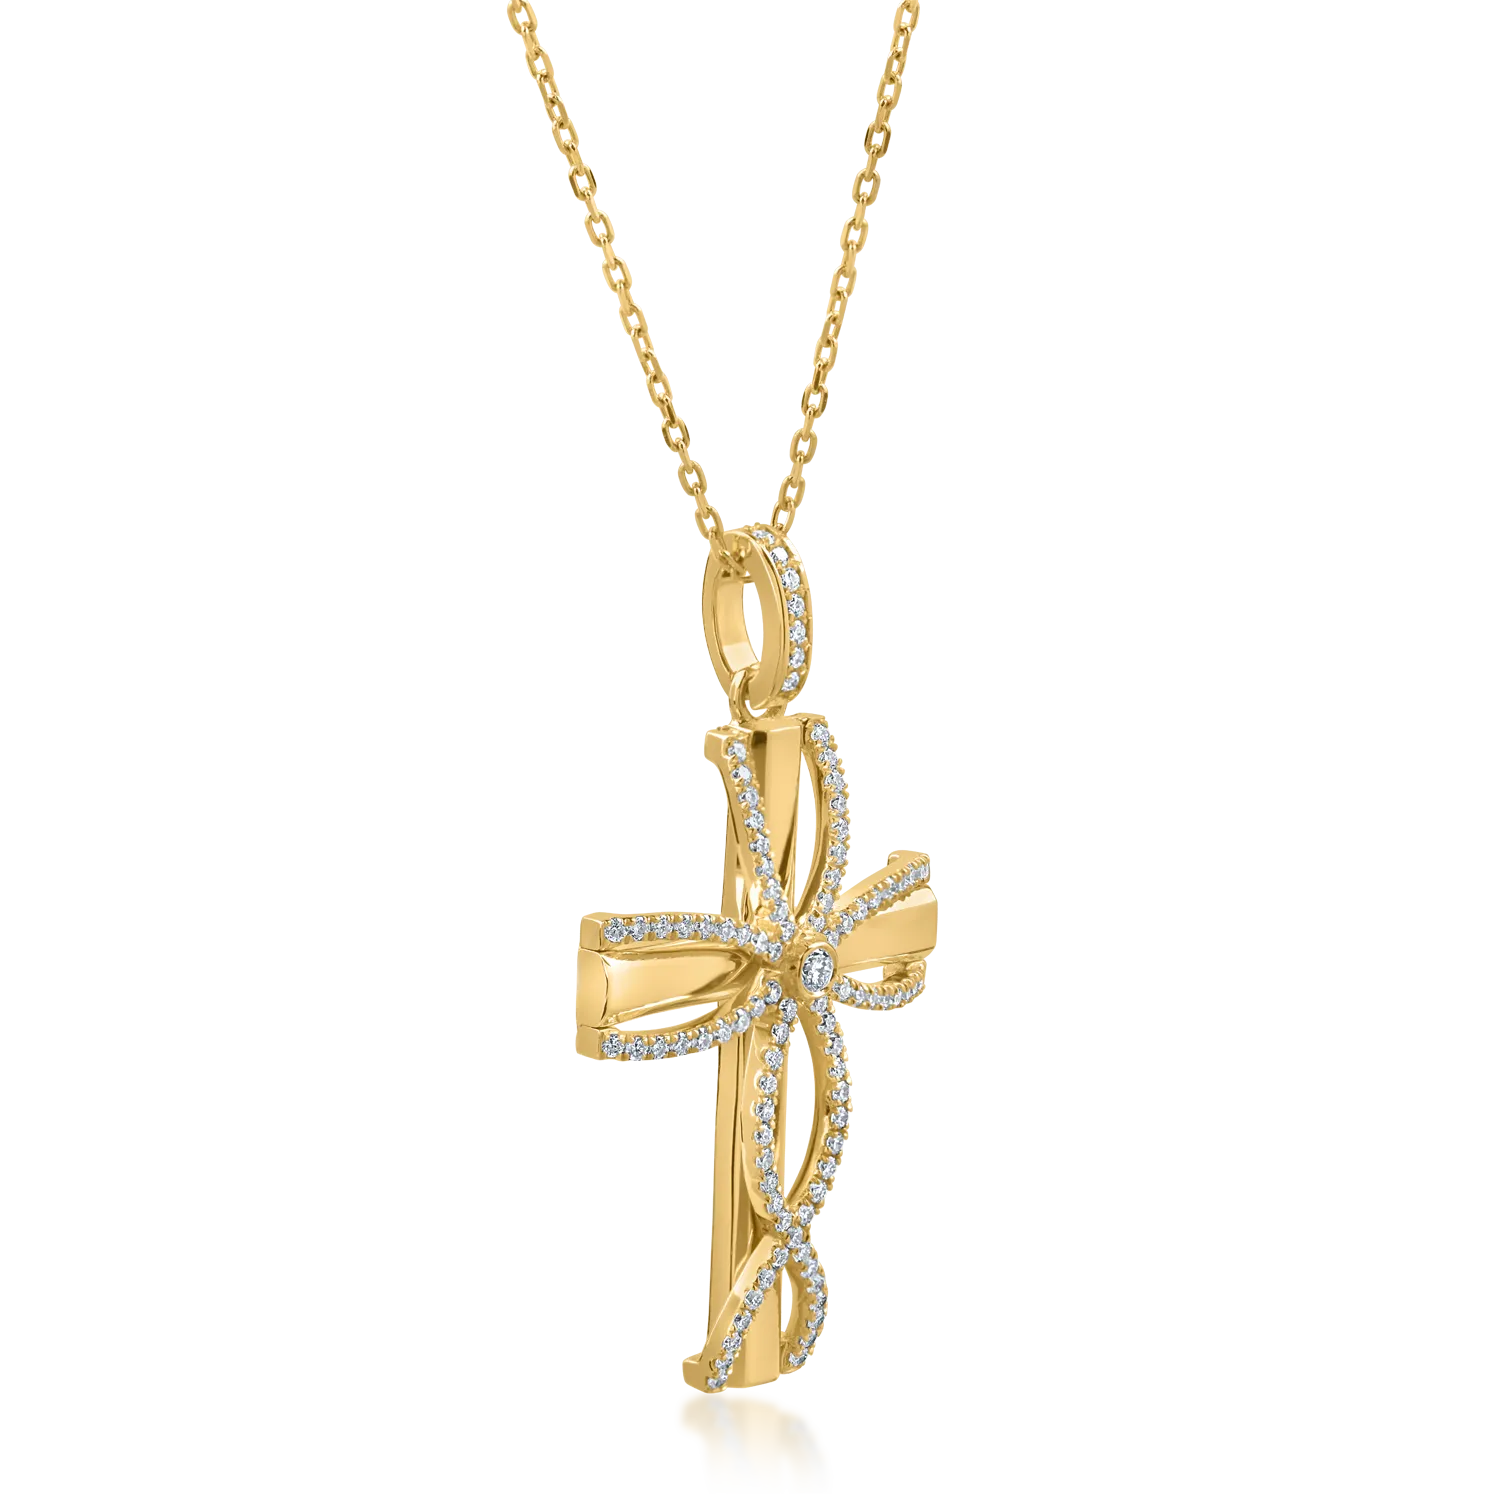 Naszyjnik w kształcie krzyża z żółtego złota z diamentami o masie 0.32ct